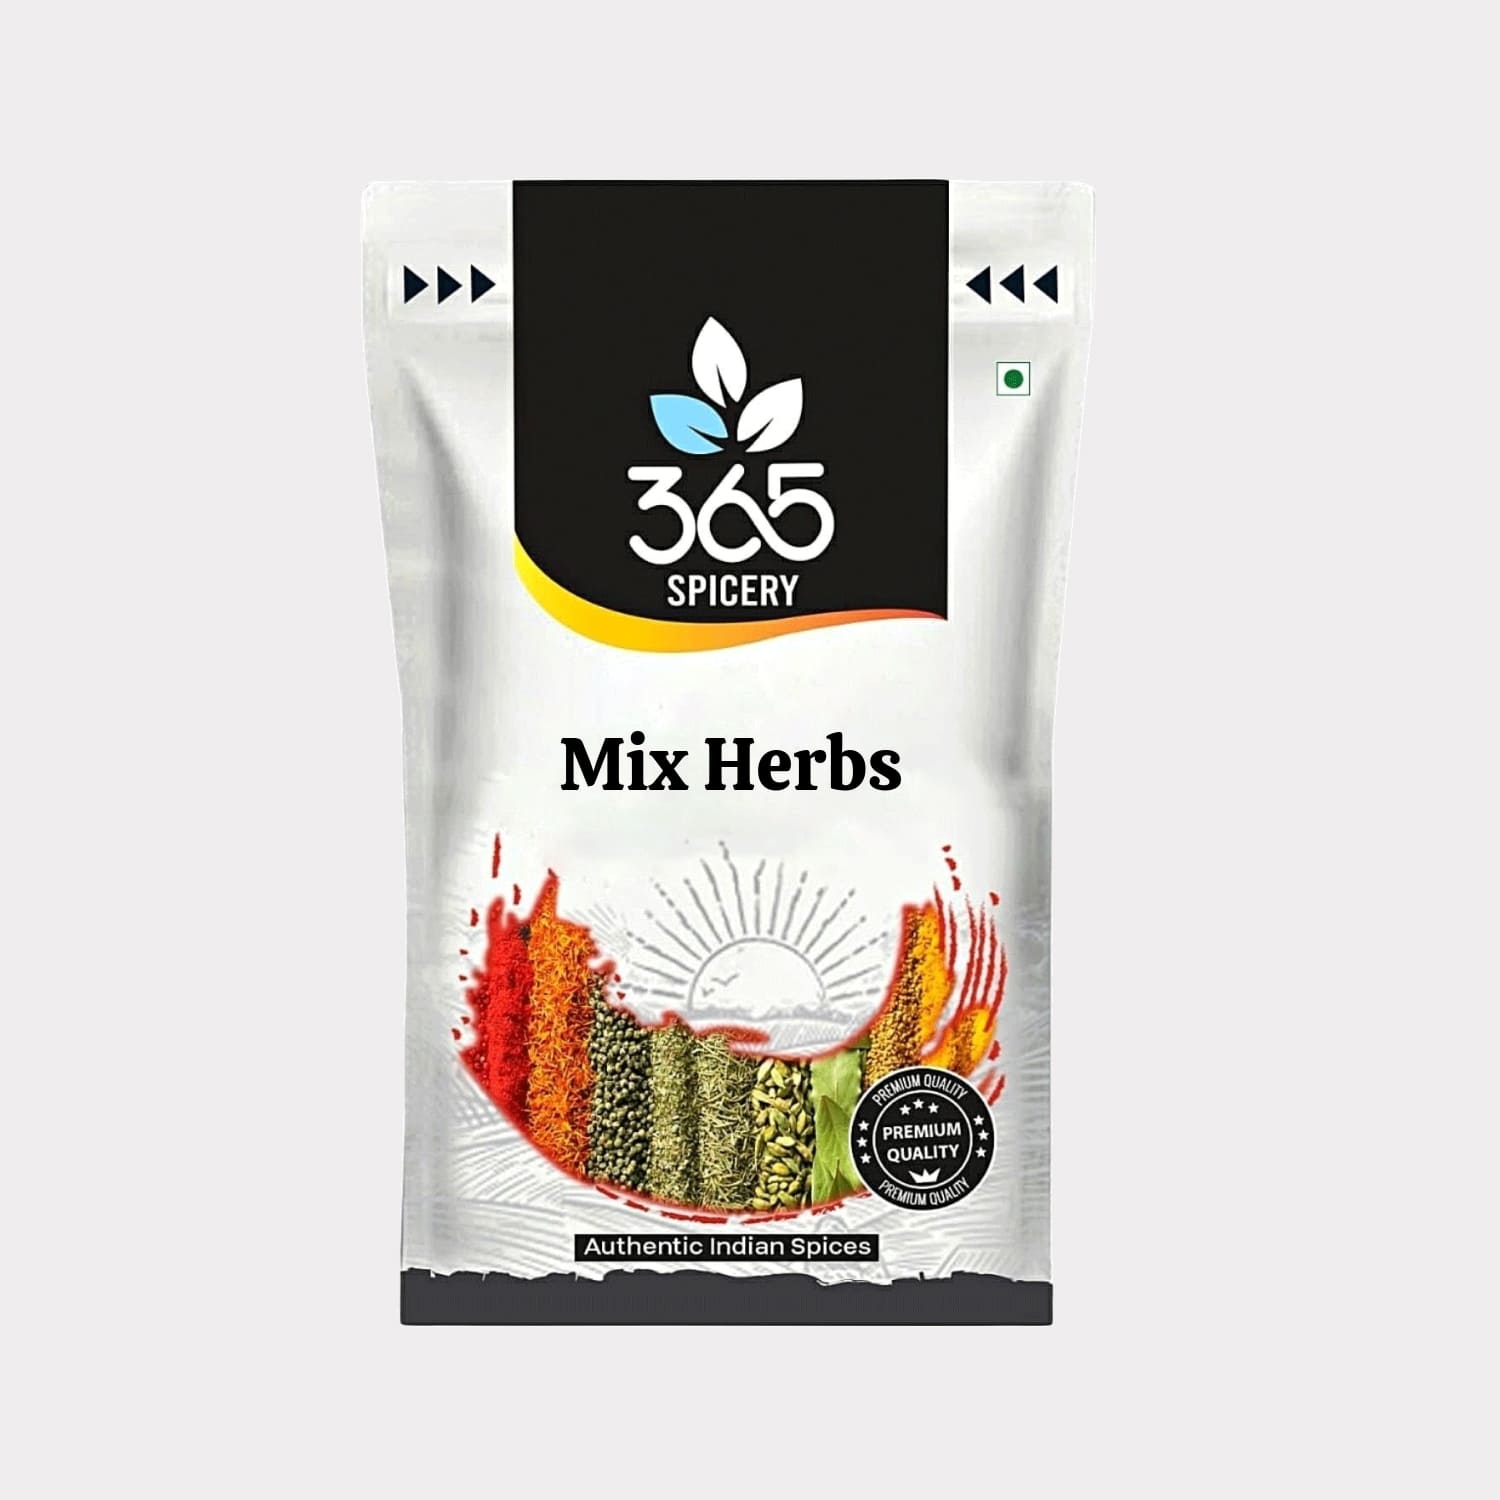 Mix Herbs